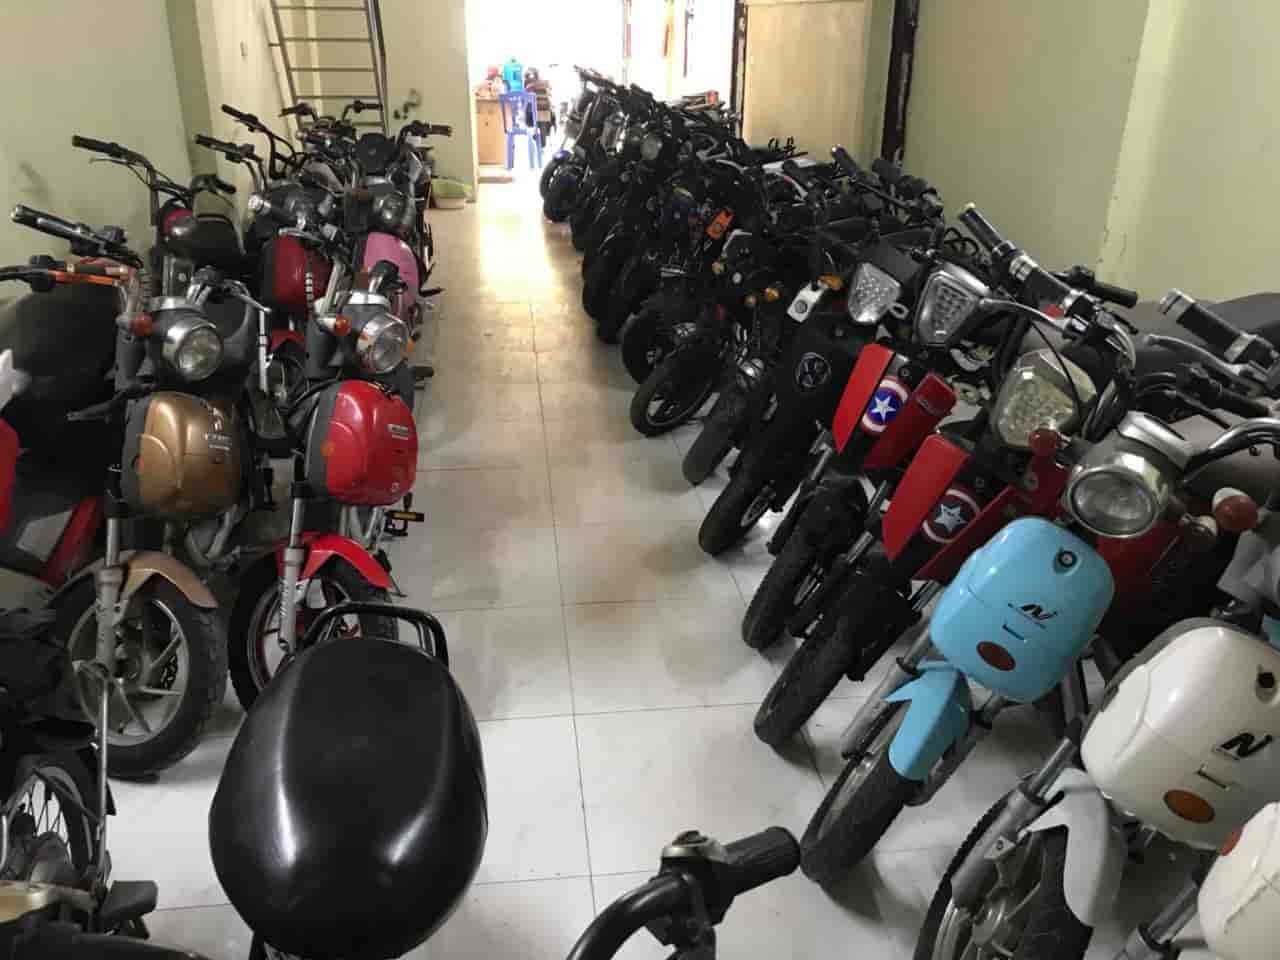 Mua bán xe đạp điện cũ - xe máy điện cũ tại Long Biên - Hà Nội